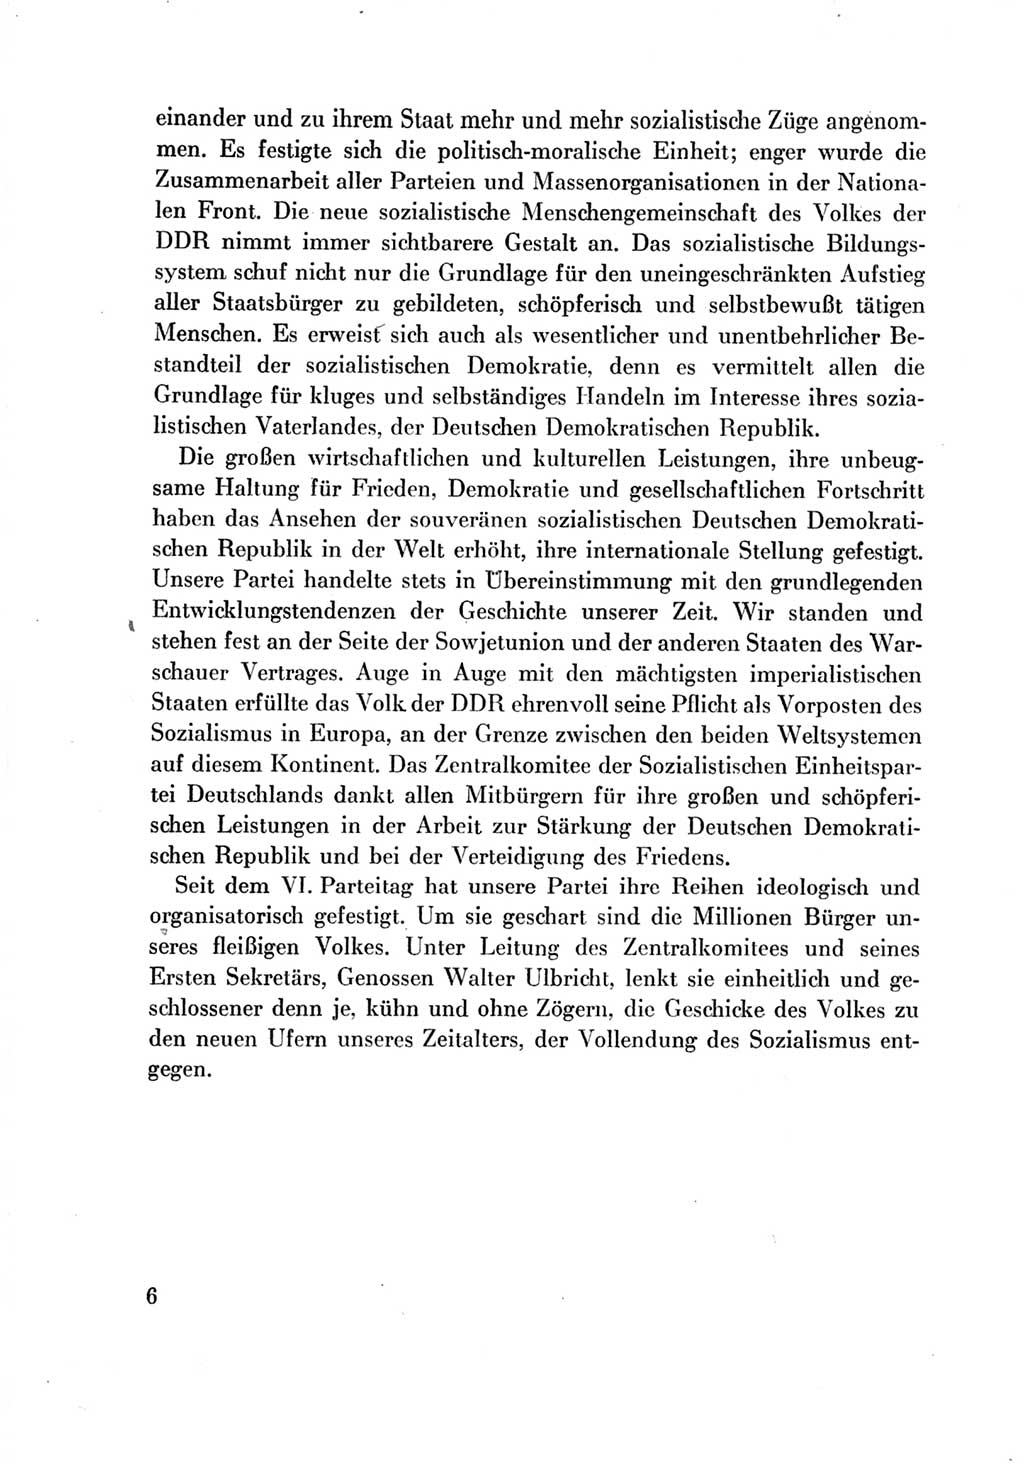 Protokoll der Verhandlungen des Ⅶ. Parteitages der Sozialistischen Einheitspartei Deutschlands (SED) [Deutsche Demokratische Republik (DDR)] 1967, Band Ⅳ, Seite 6 (Prot. Verh. Ⅶ. PT SED DDR 1967, Bd. Ⅳ, S. 6)